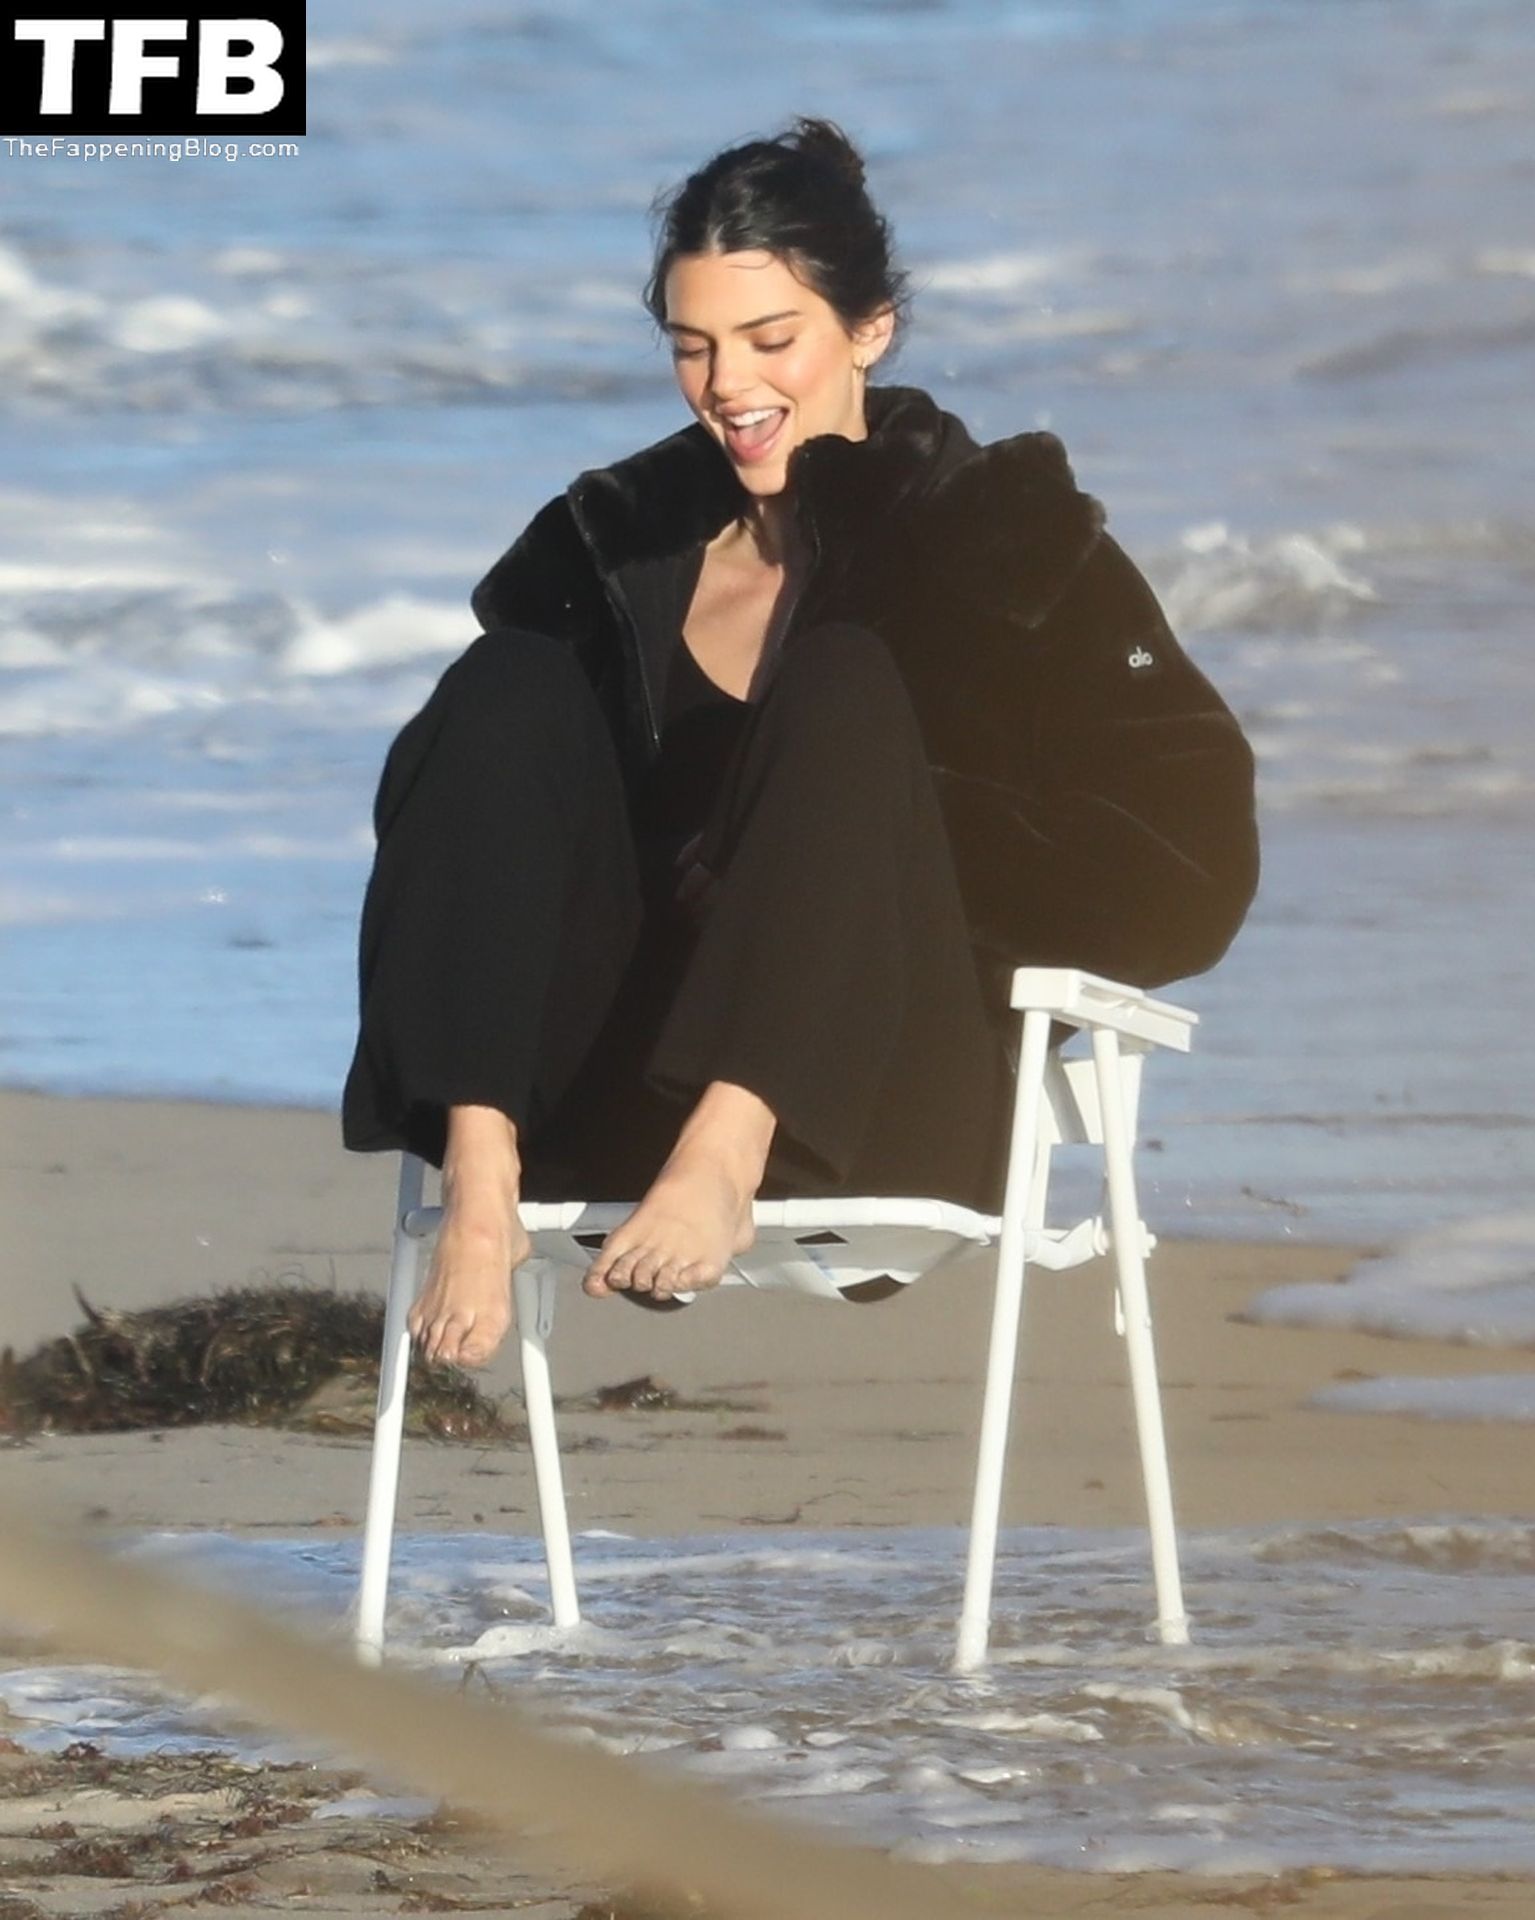 Kendall-Jenner-Feet-The-Fappening-Blog-7.jpg